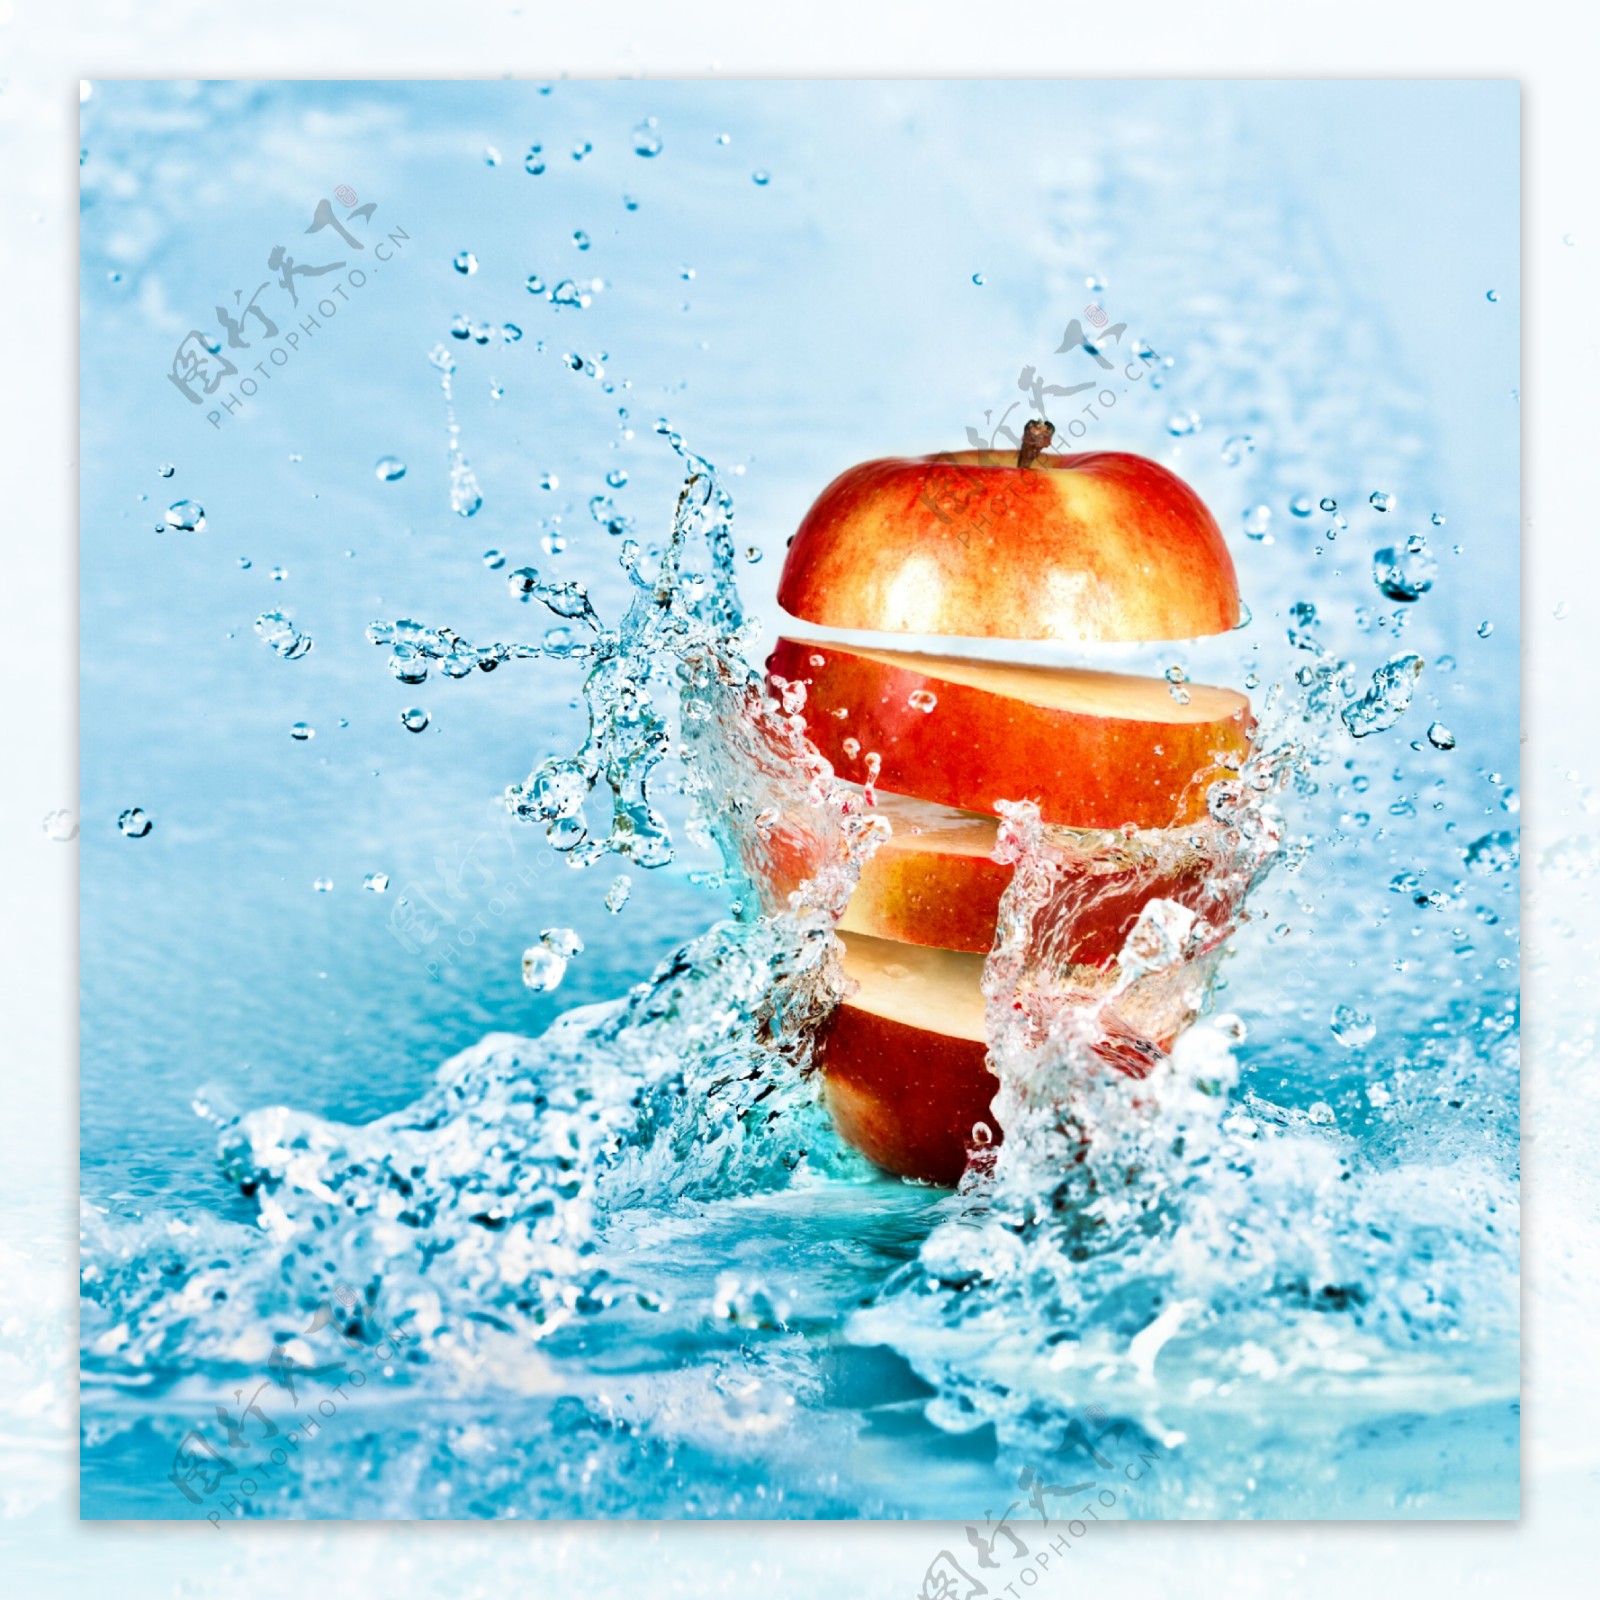 溅起的水花与苹果图片